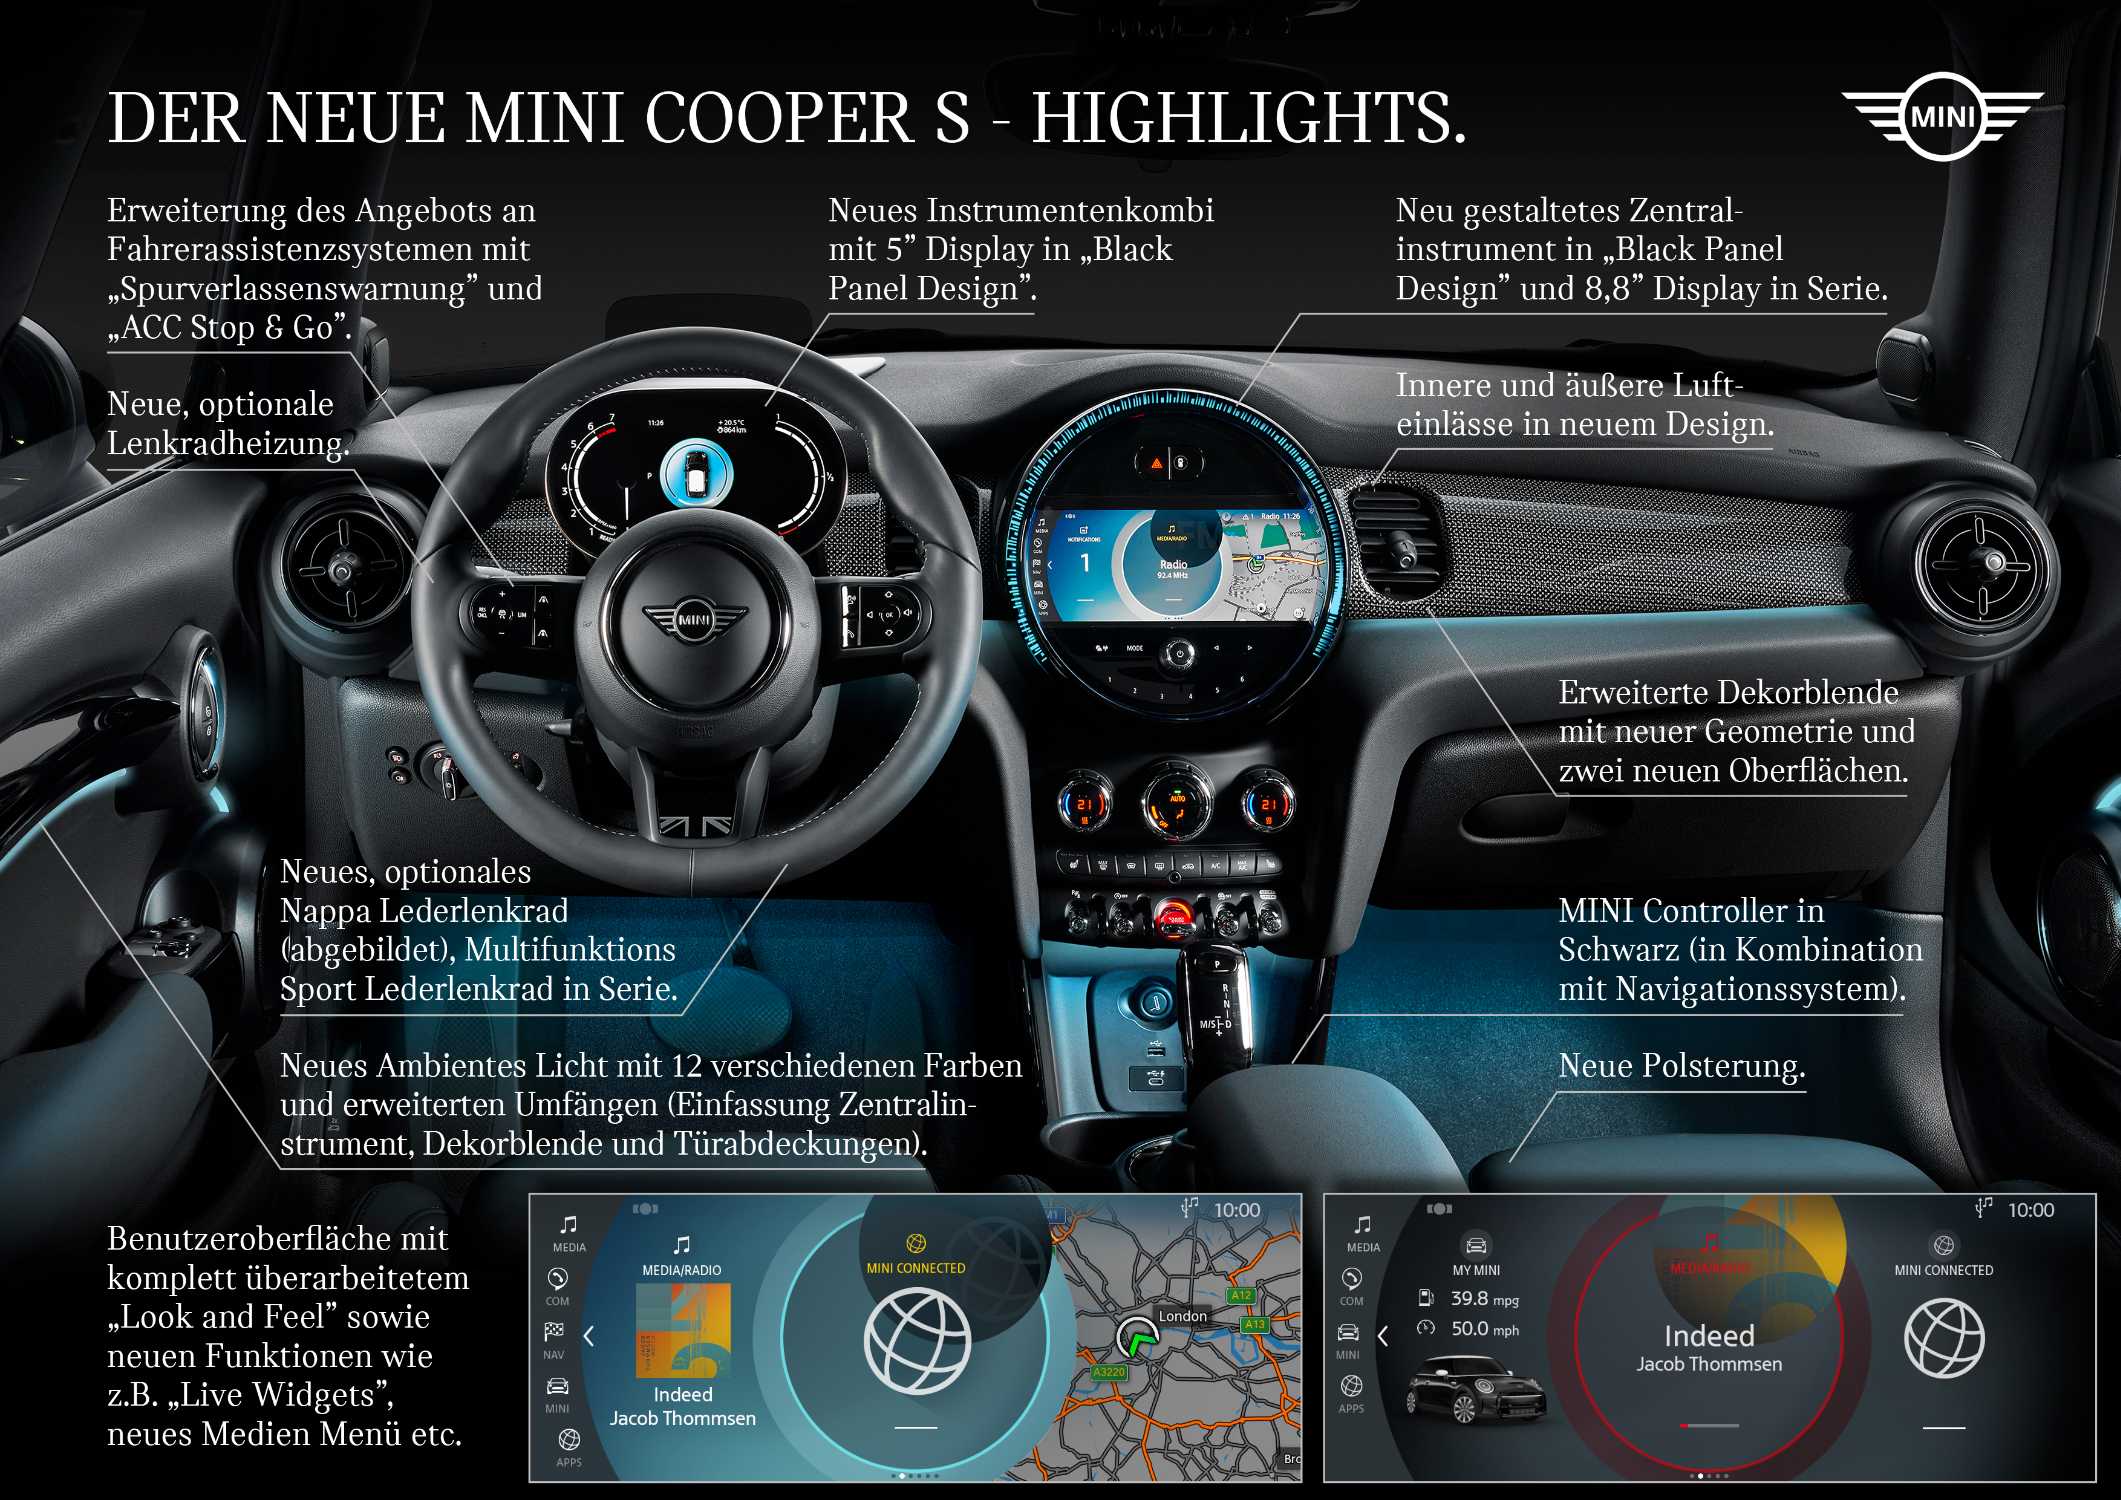 Highlights - MINI Cooper S 3-Türer (01/2021)